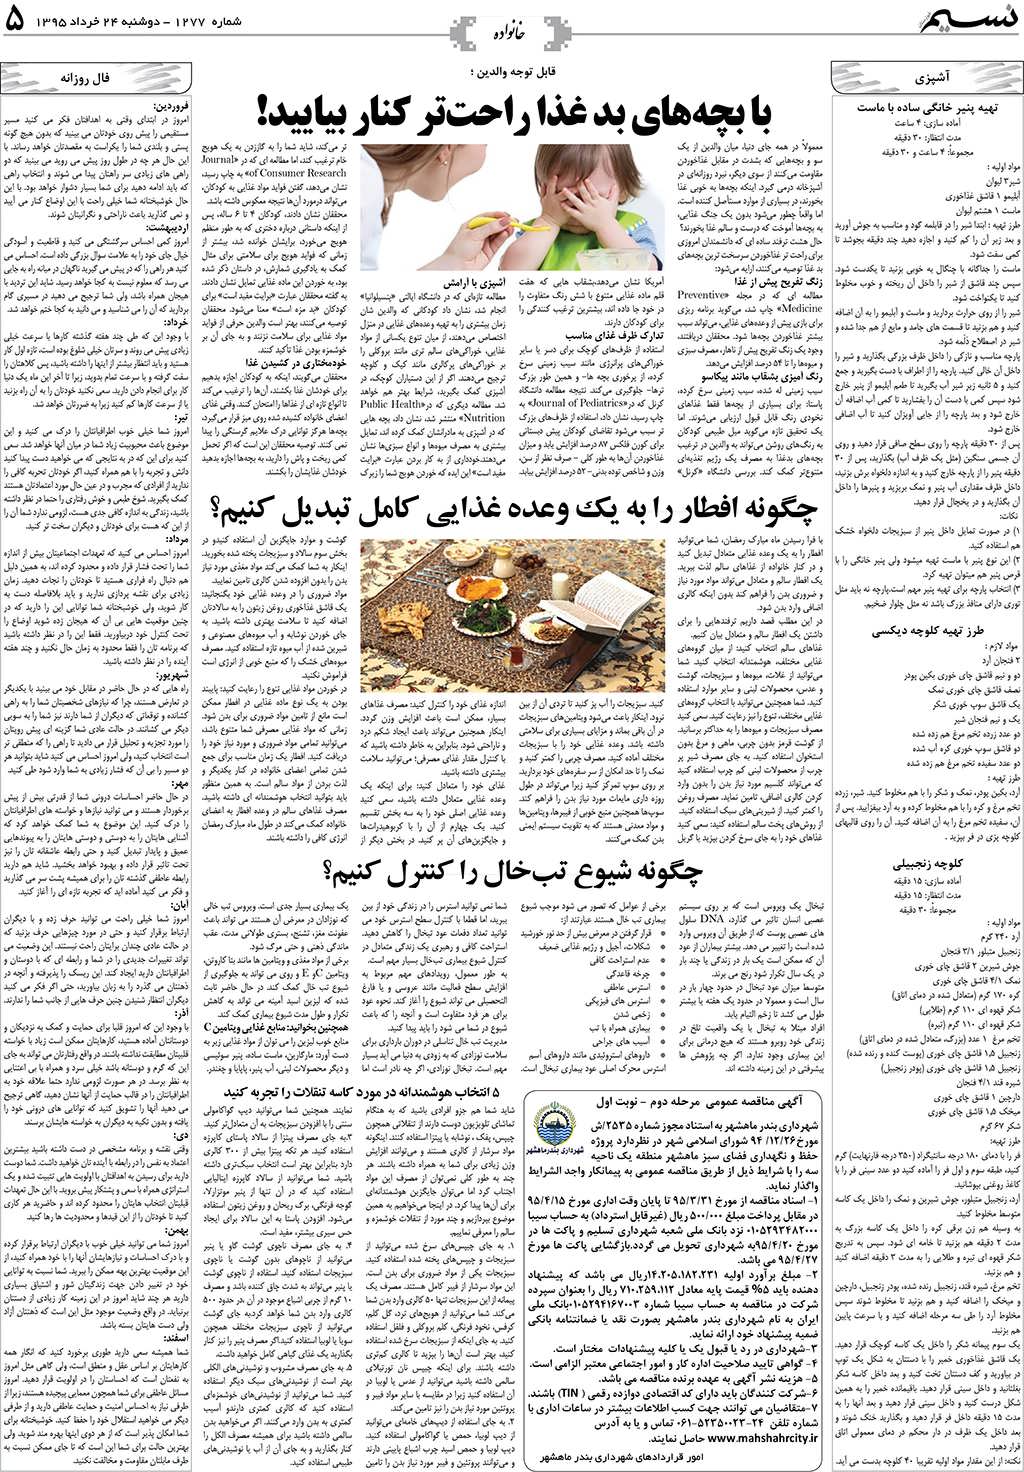 صفحه خانواده روزنامه نسیم شماره 1277